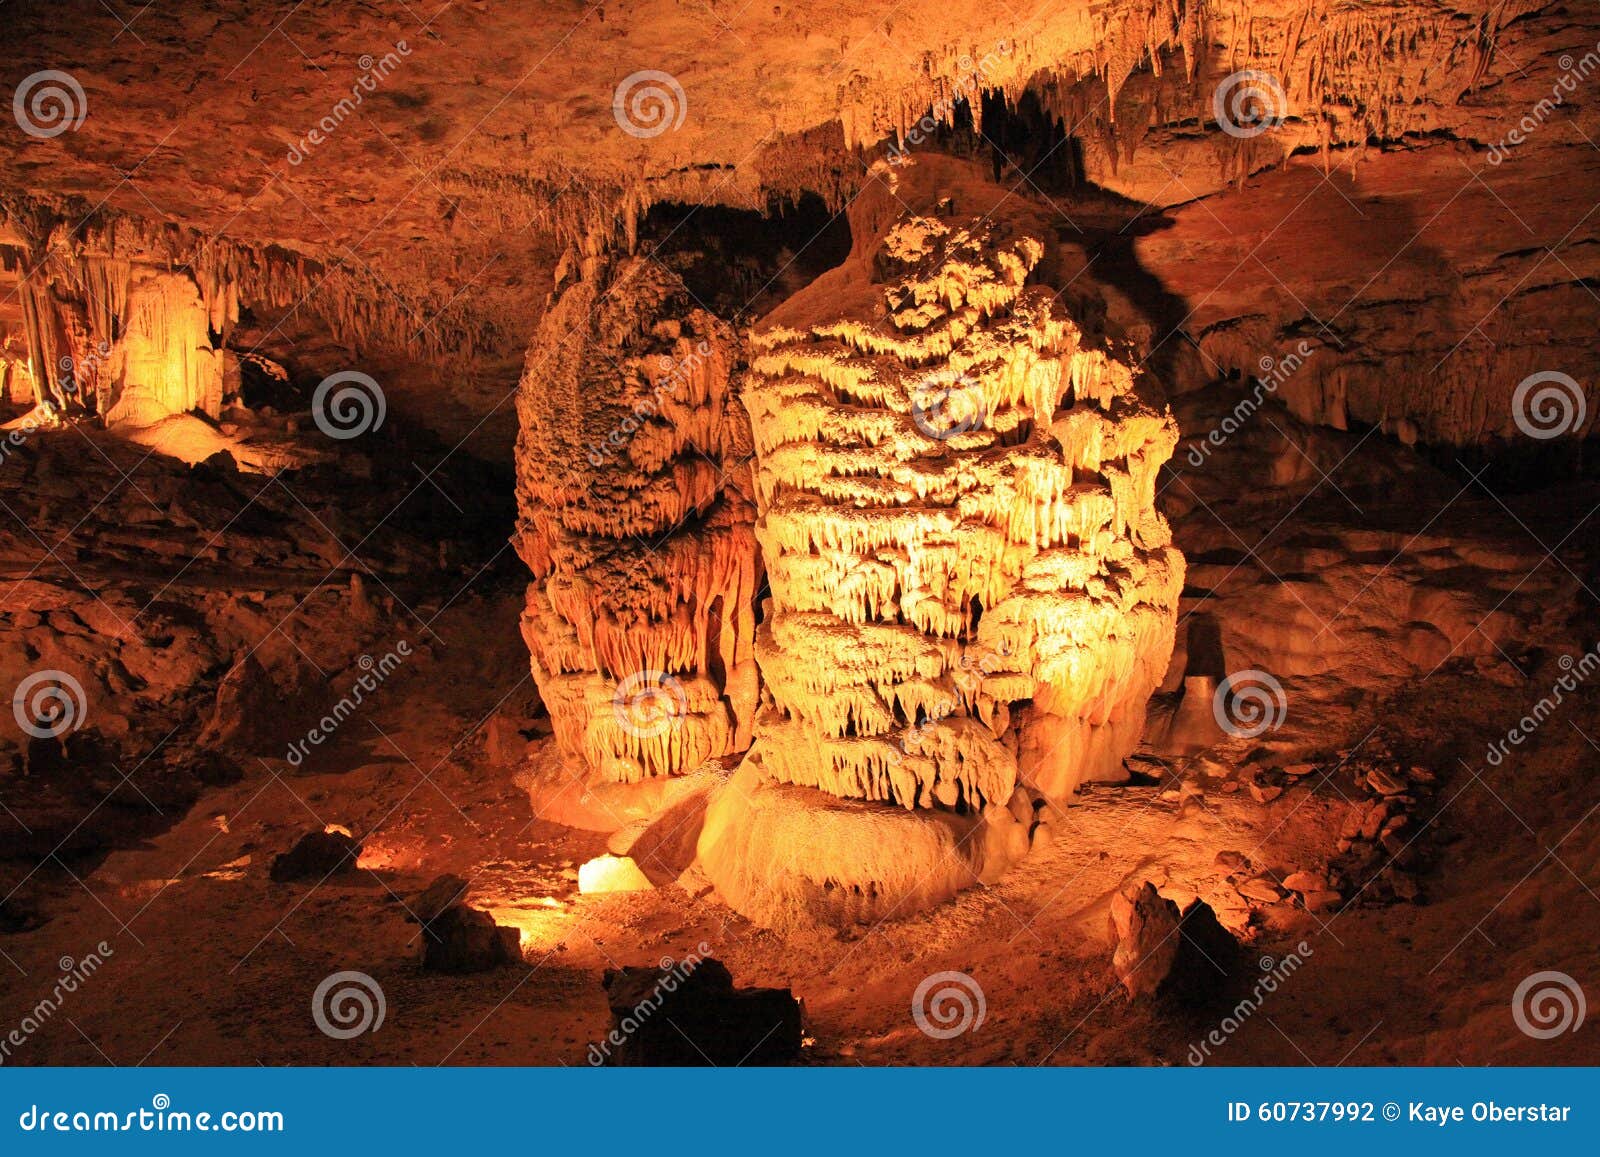 fantastic caverns